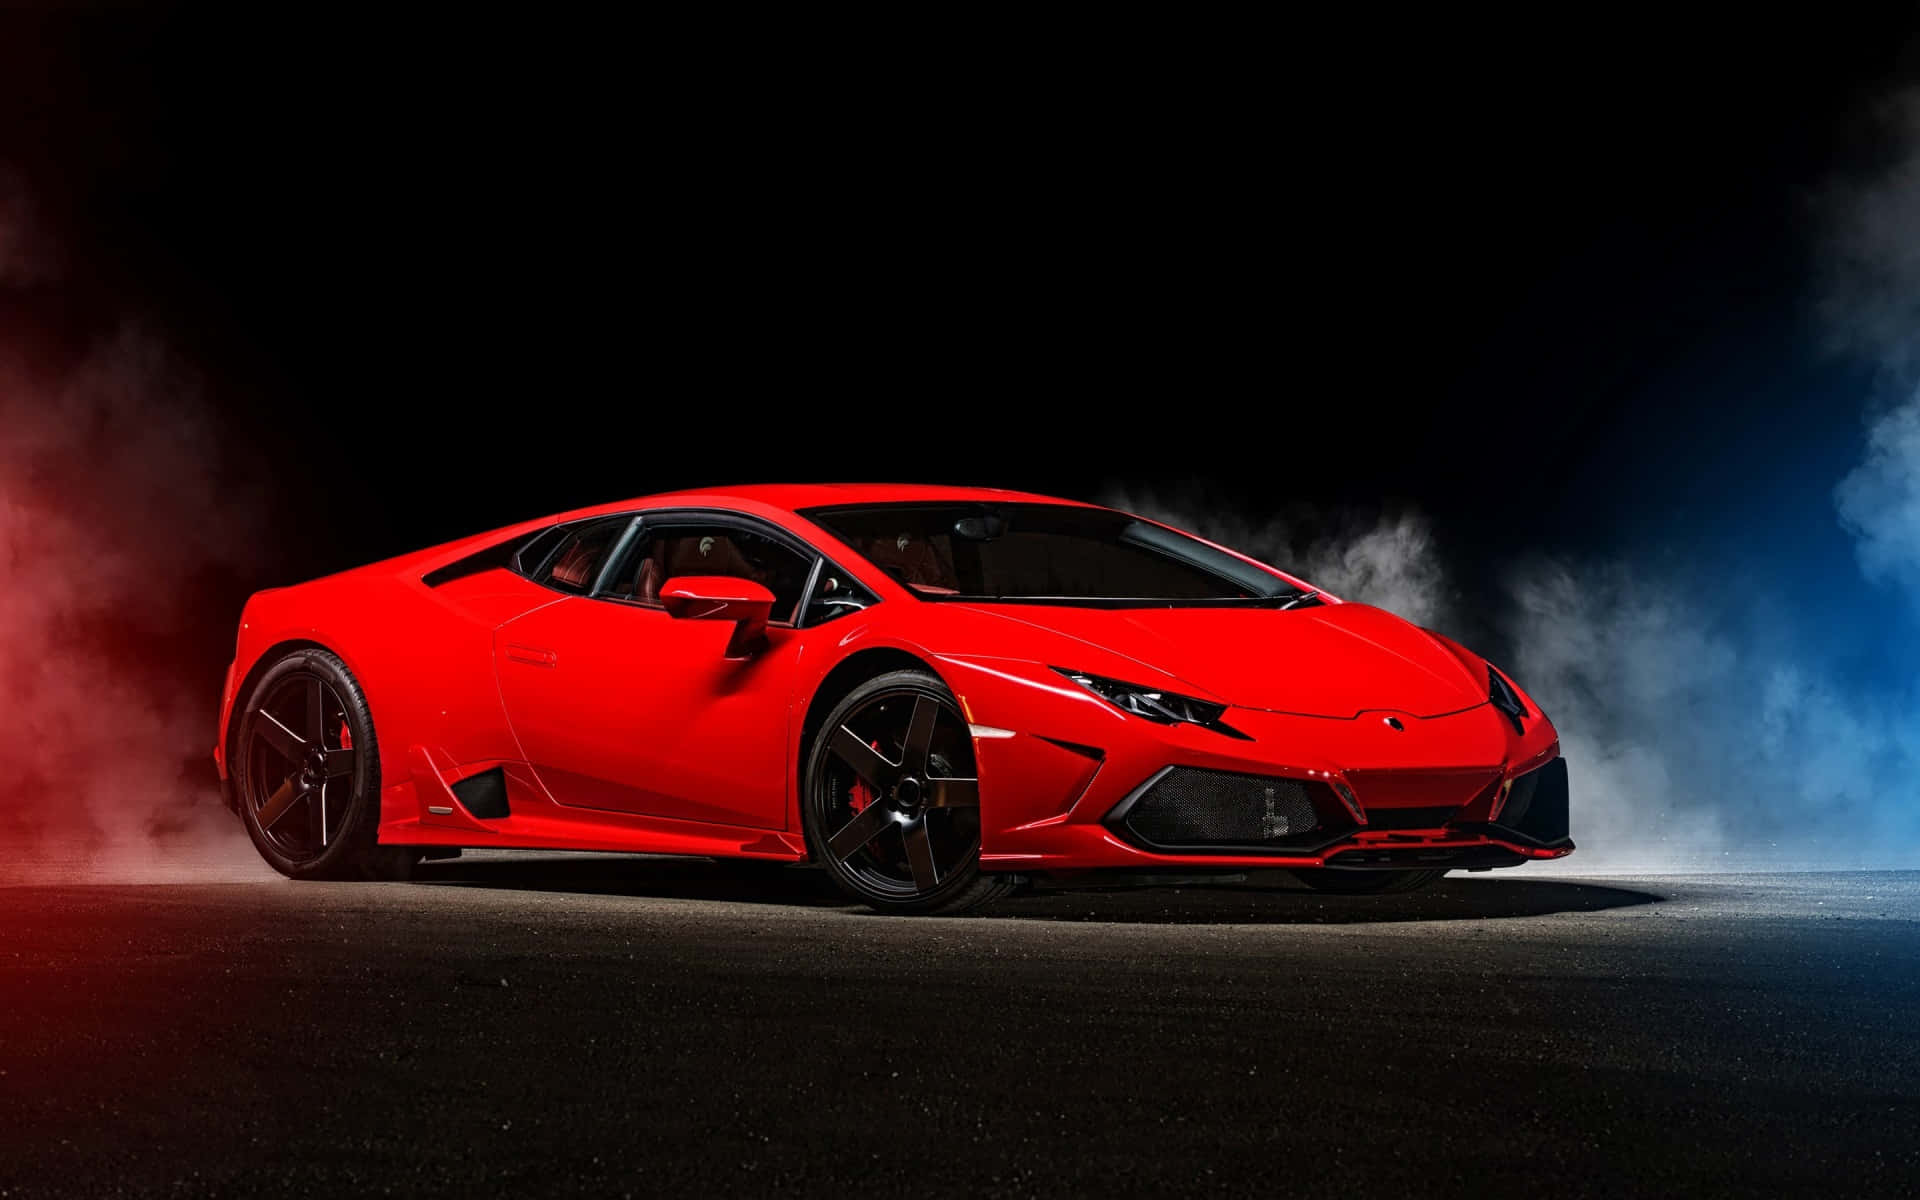 Primary thurst of luxury - Lamborghini